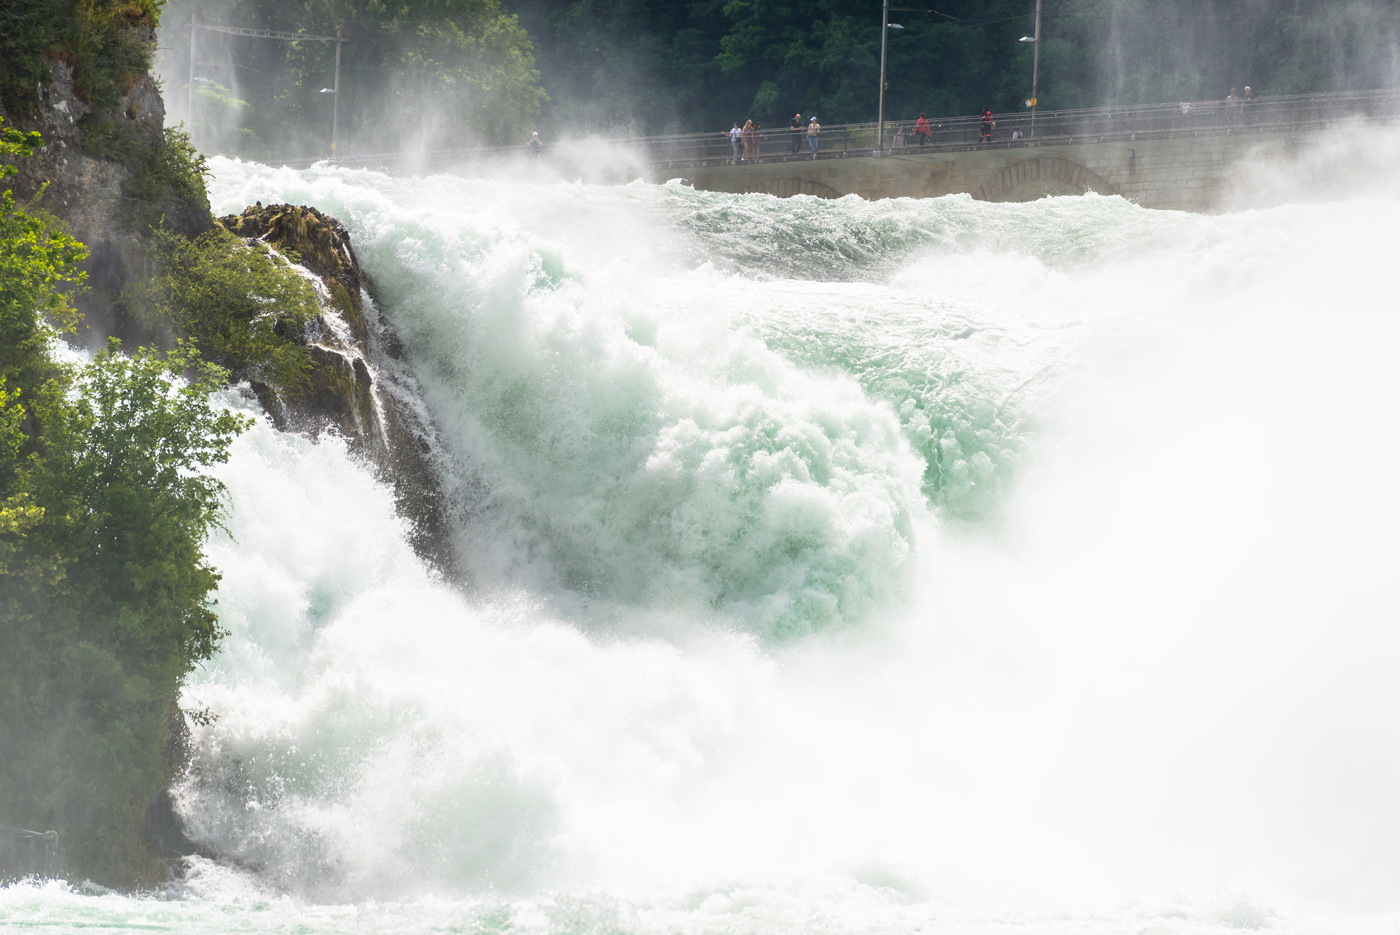 Les chutes du Rhin. Photo @kinek00 via Twenty20